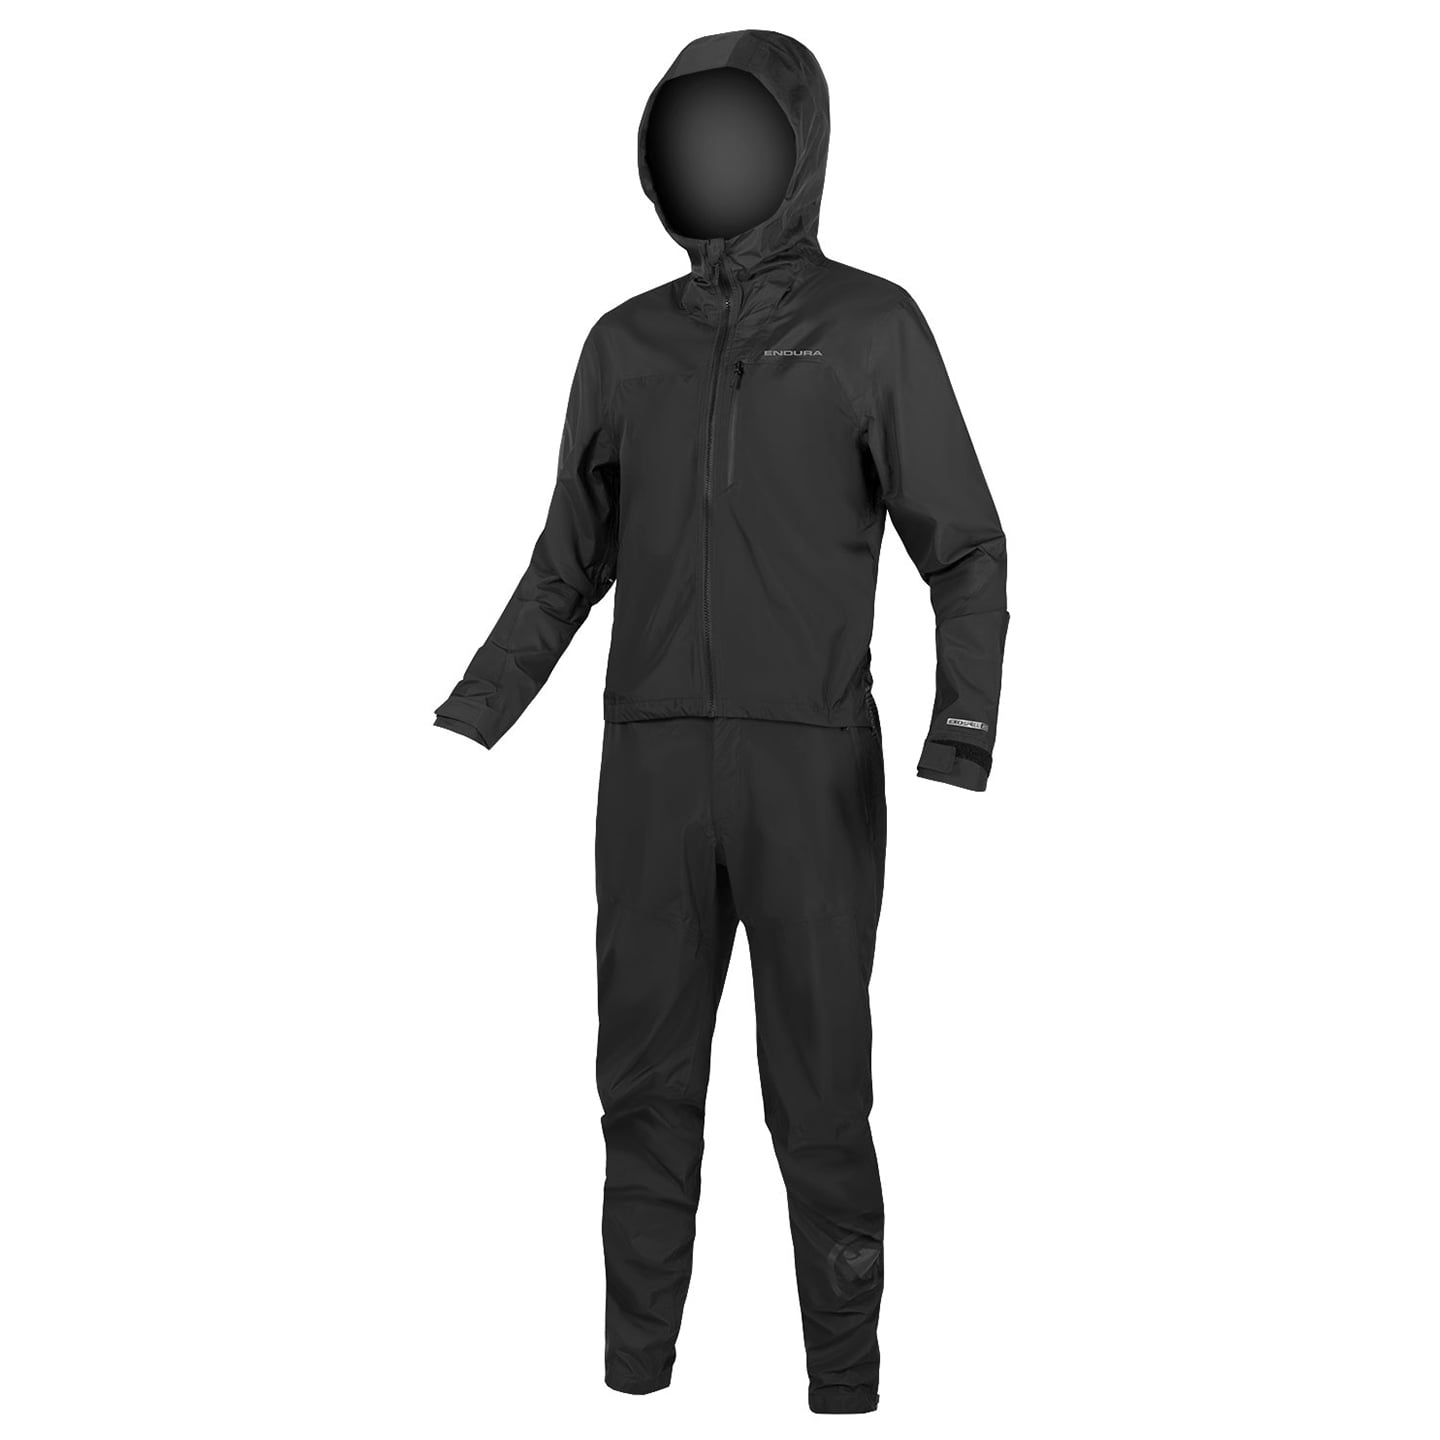 ENDURA Singletrack Onesie Waterproof Onsie Suit, for men, size M, Cycling body, Cycle clothing